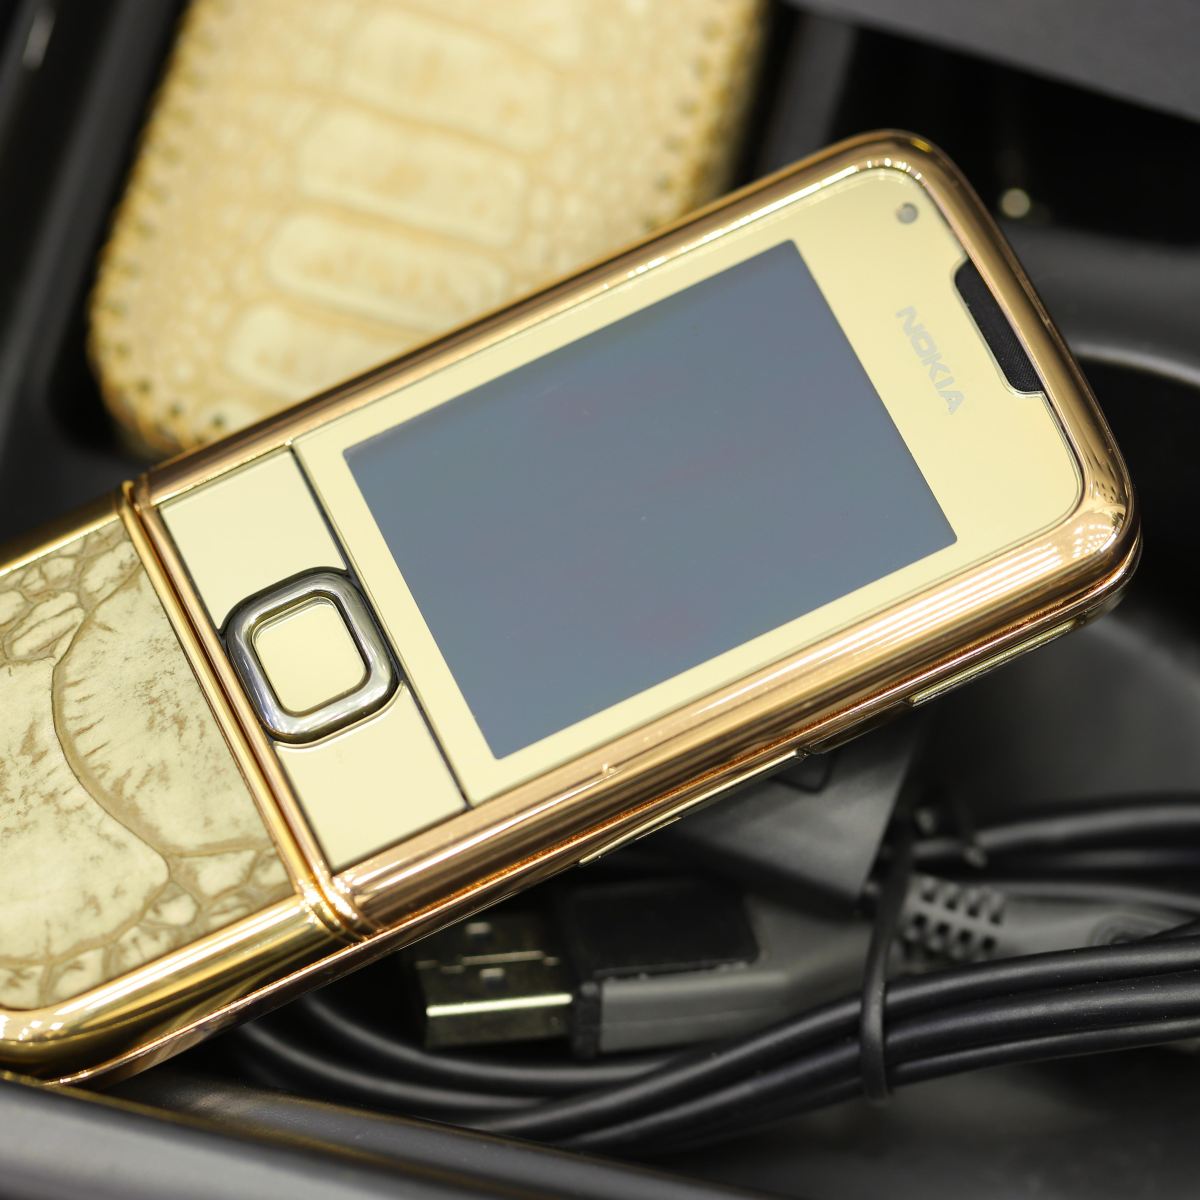 Nokia 8800 Rose Gold - Tinh tế, thanh lịch và sang trọng, Nokia 8800 Rose Gold sẽ khiến ai nhìn thấy nó đều muốn sở hữu ngay lập tức. Màn hình vô cực, chất liệu vàng hồng quý phái, cùng đường viền sáng bóng là những điểm quan trọng đẹp tuyệt vời để ngắm nhìn.